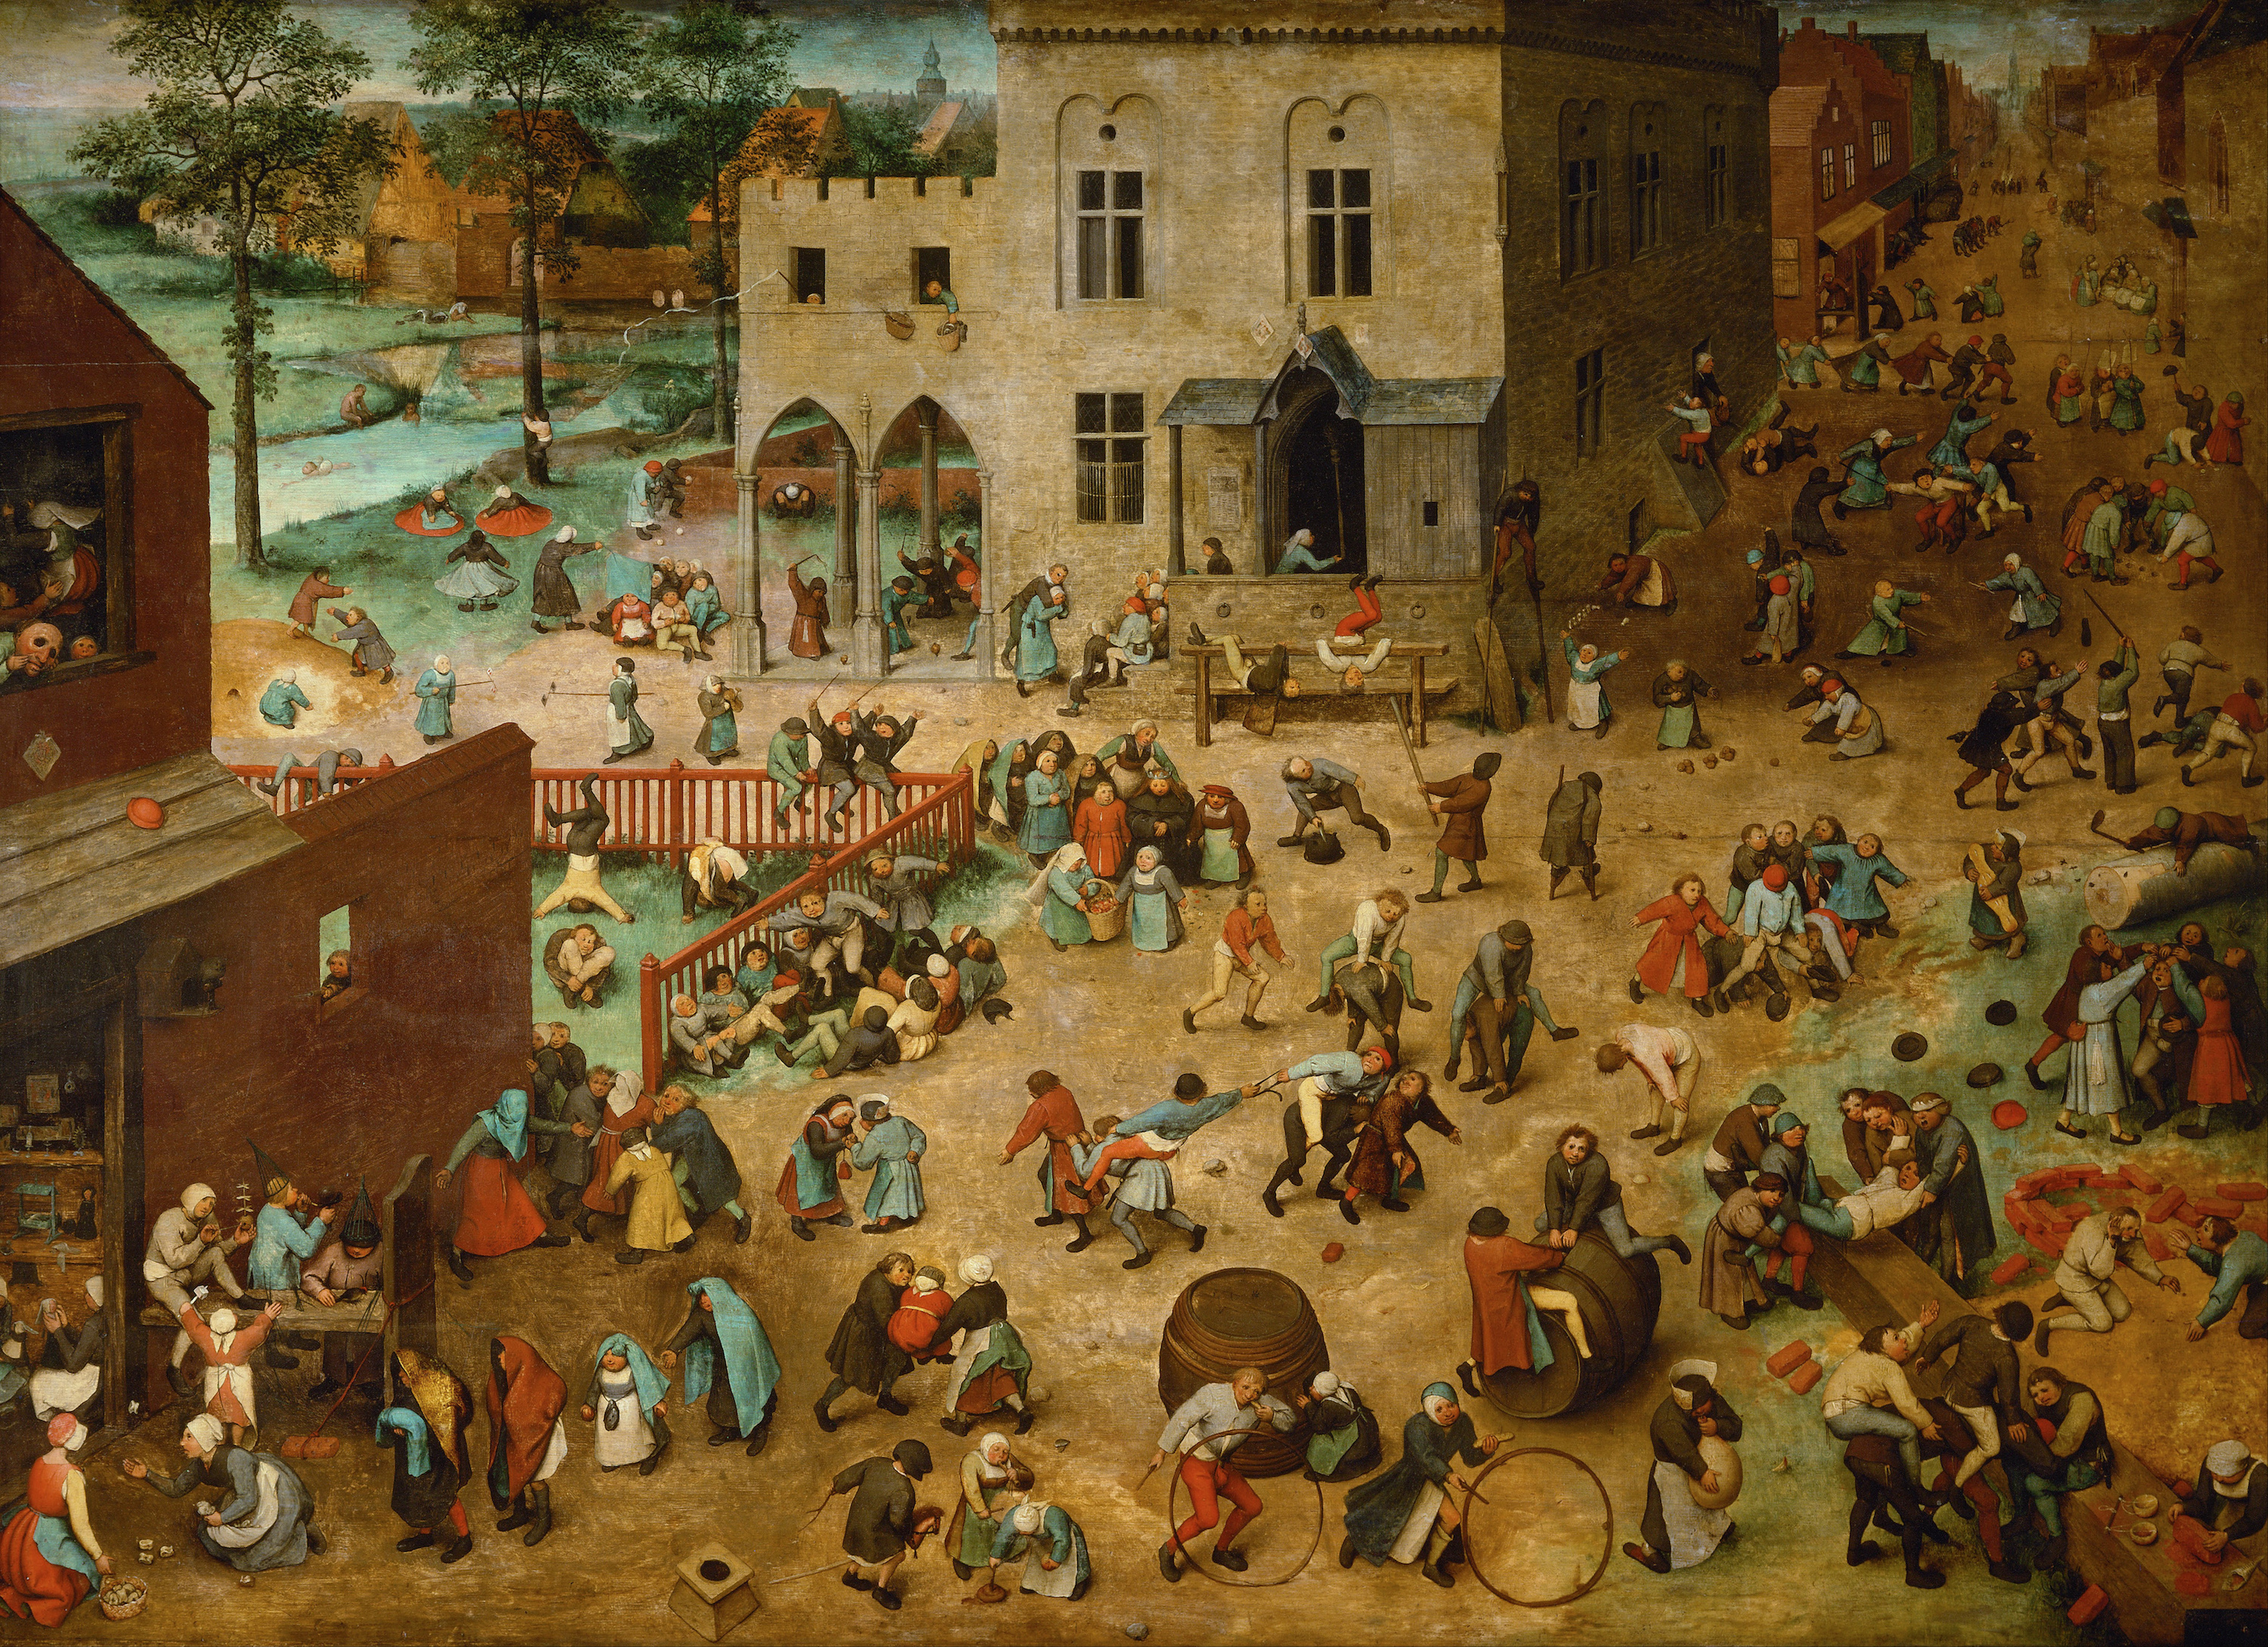 儿童游戏 by 老彼得· 勃鲁盖尔 - 1560 - 118 x 161 cm 艺术史博物馆